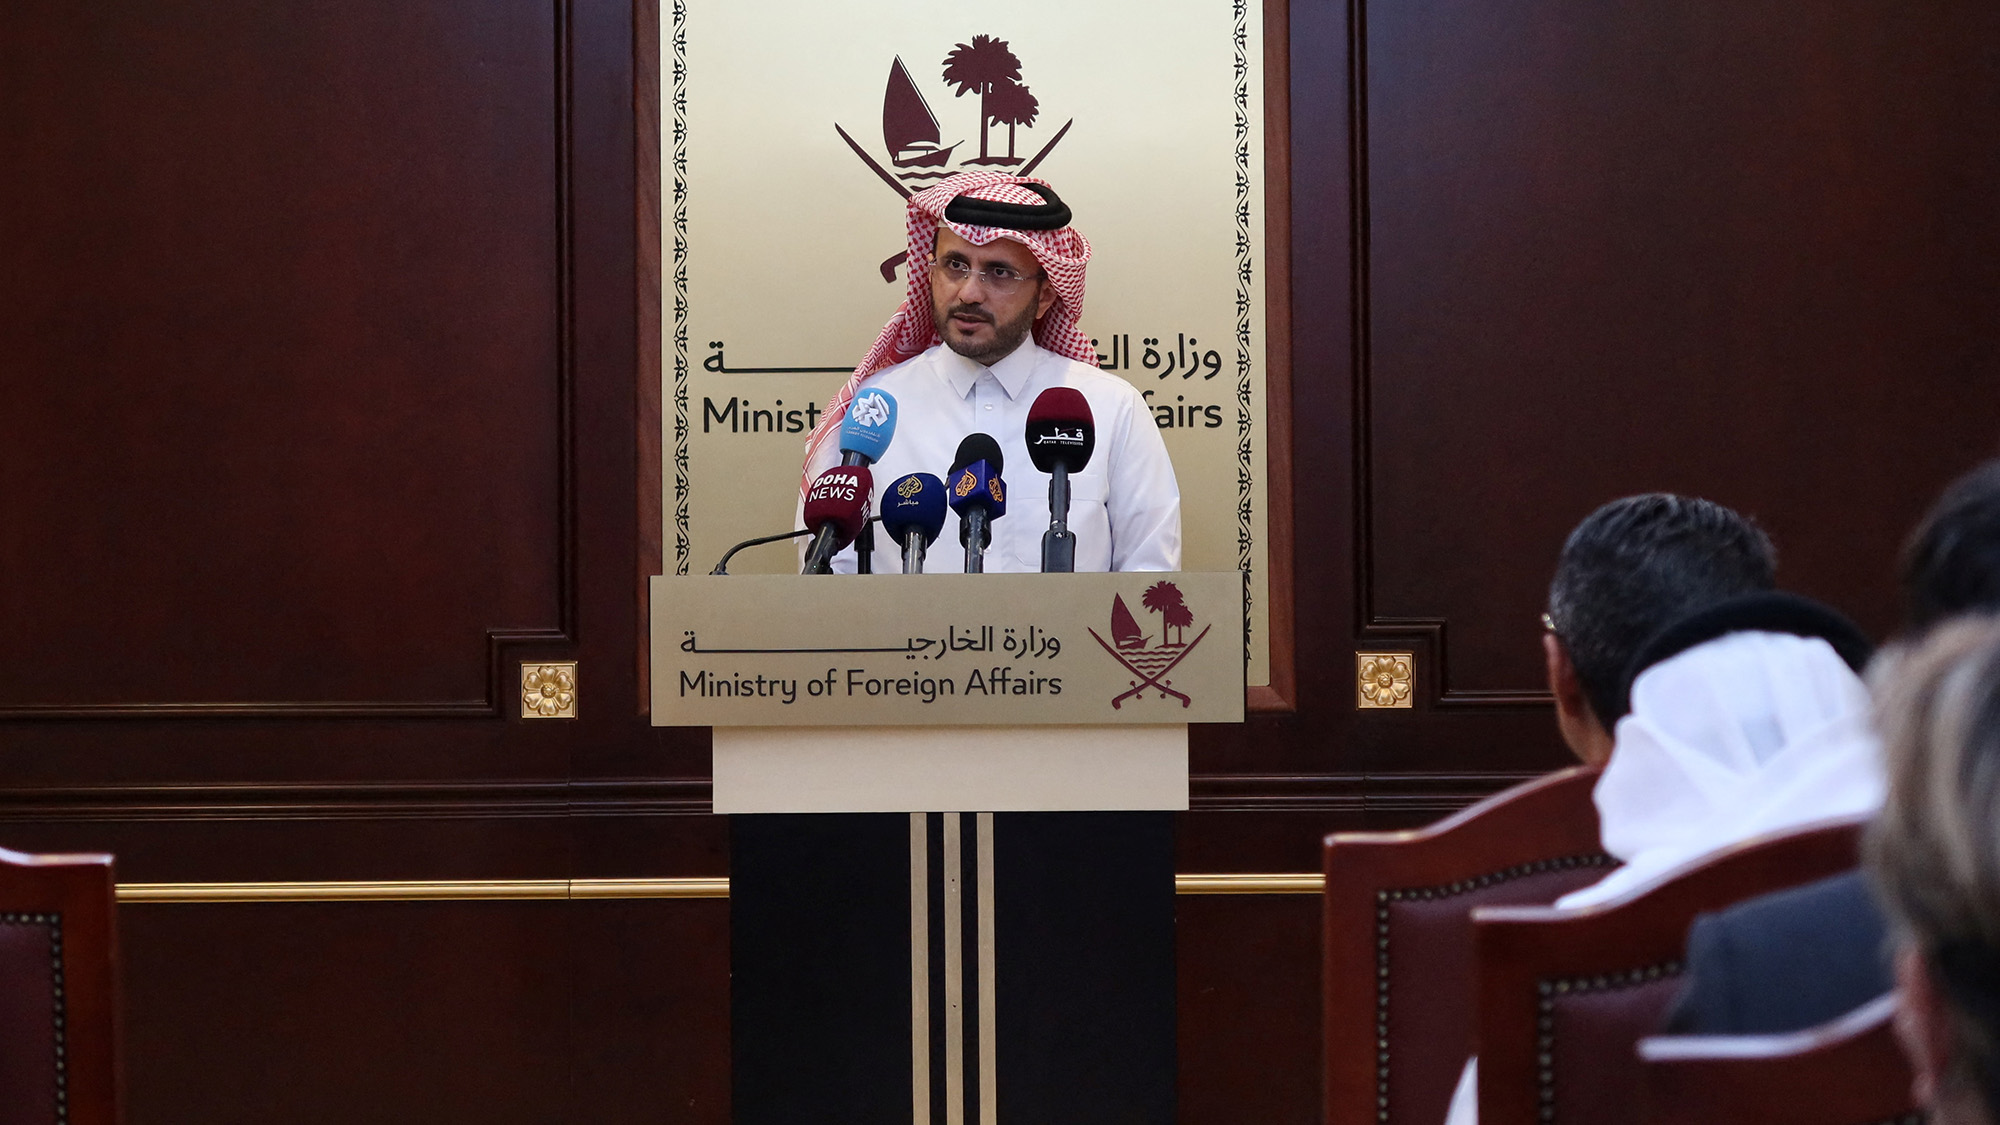 El portavoz del Ministerio de Asuntos Exteriores de Qatar, Majed Al-Ansari, habla con periodistas durante una conferencia de prensa en Doha, Qatar, el 23 de noviembre. (Imad Creidi/Reuters)